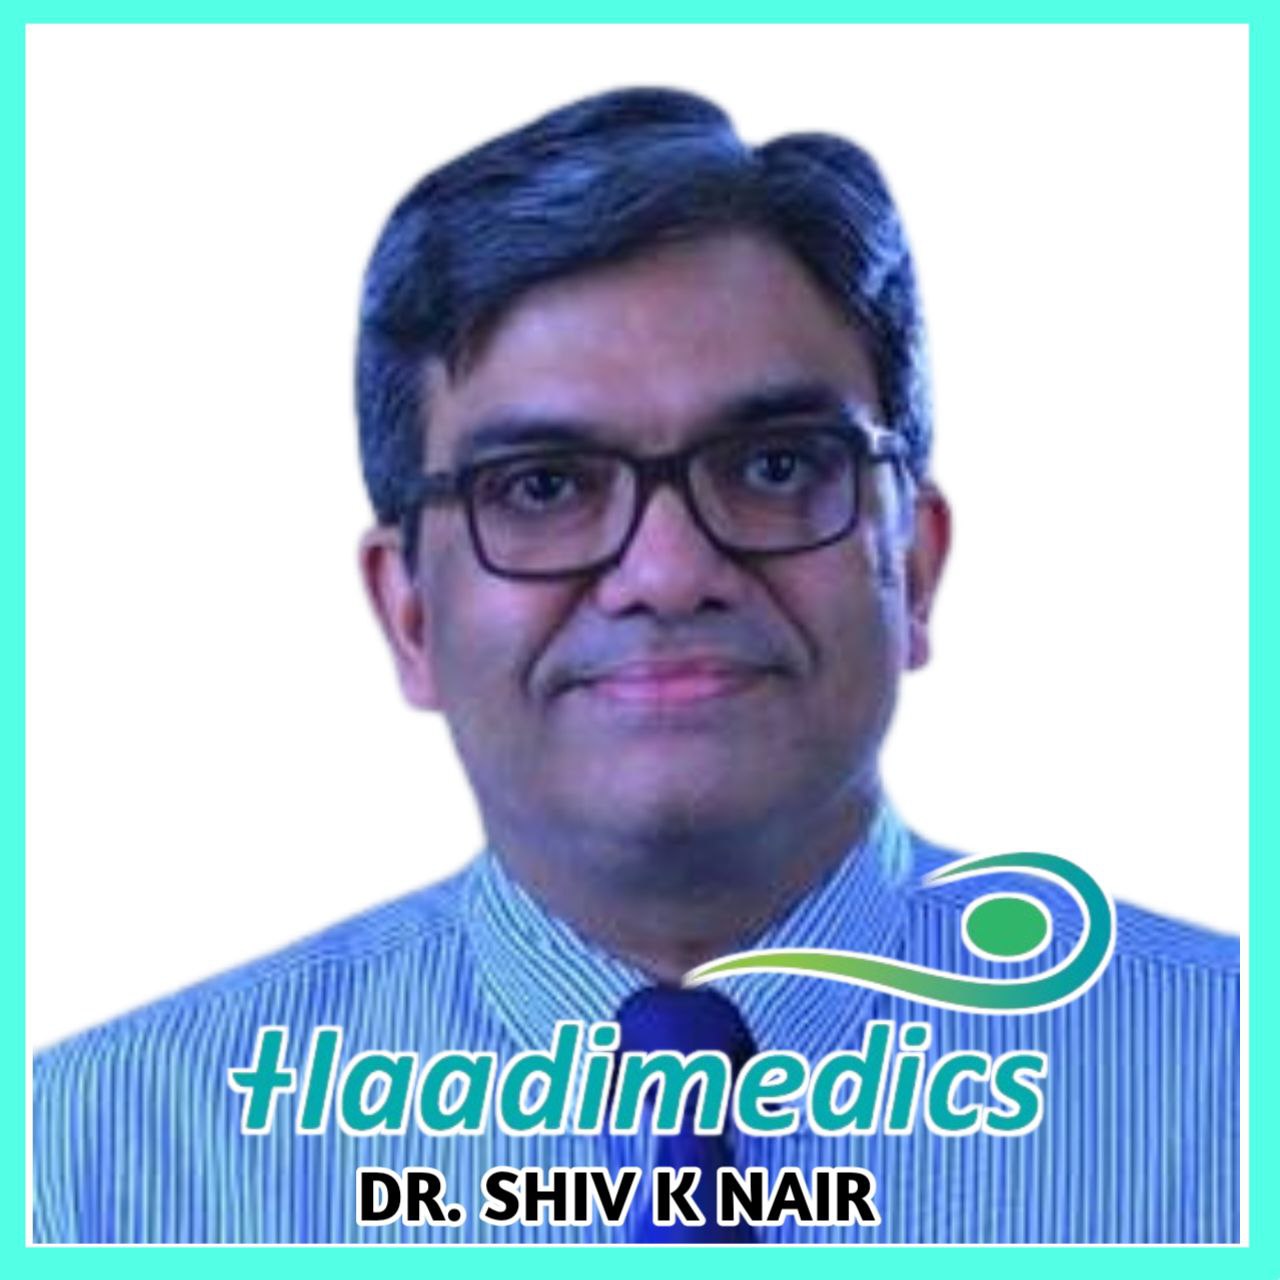 Dr. Shiv K Nair